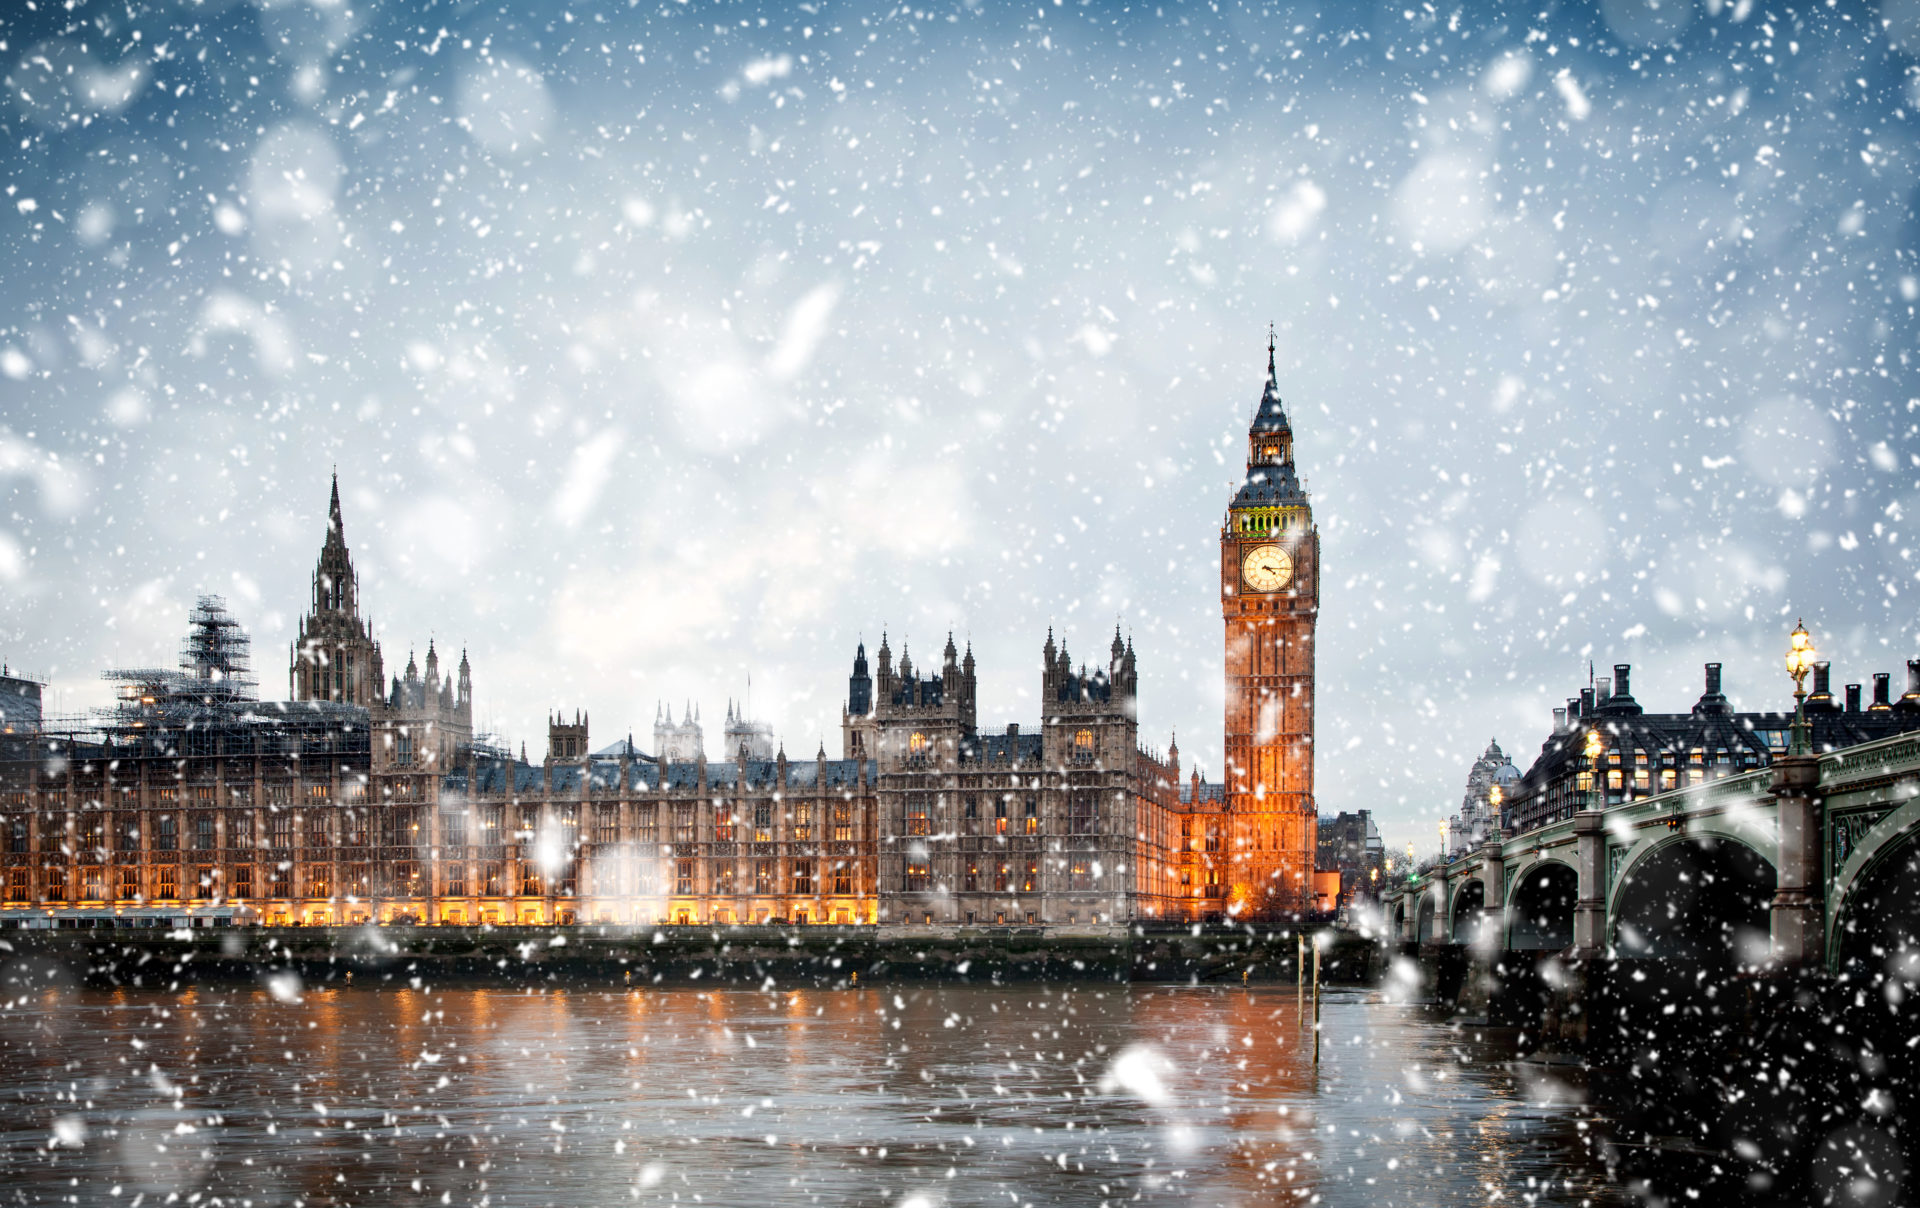 Parliament Snow